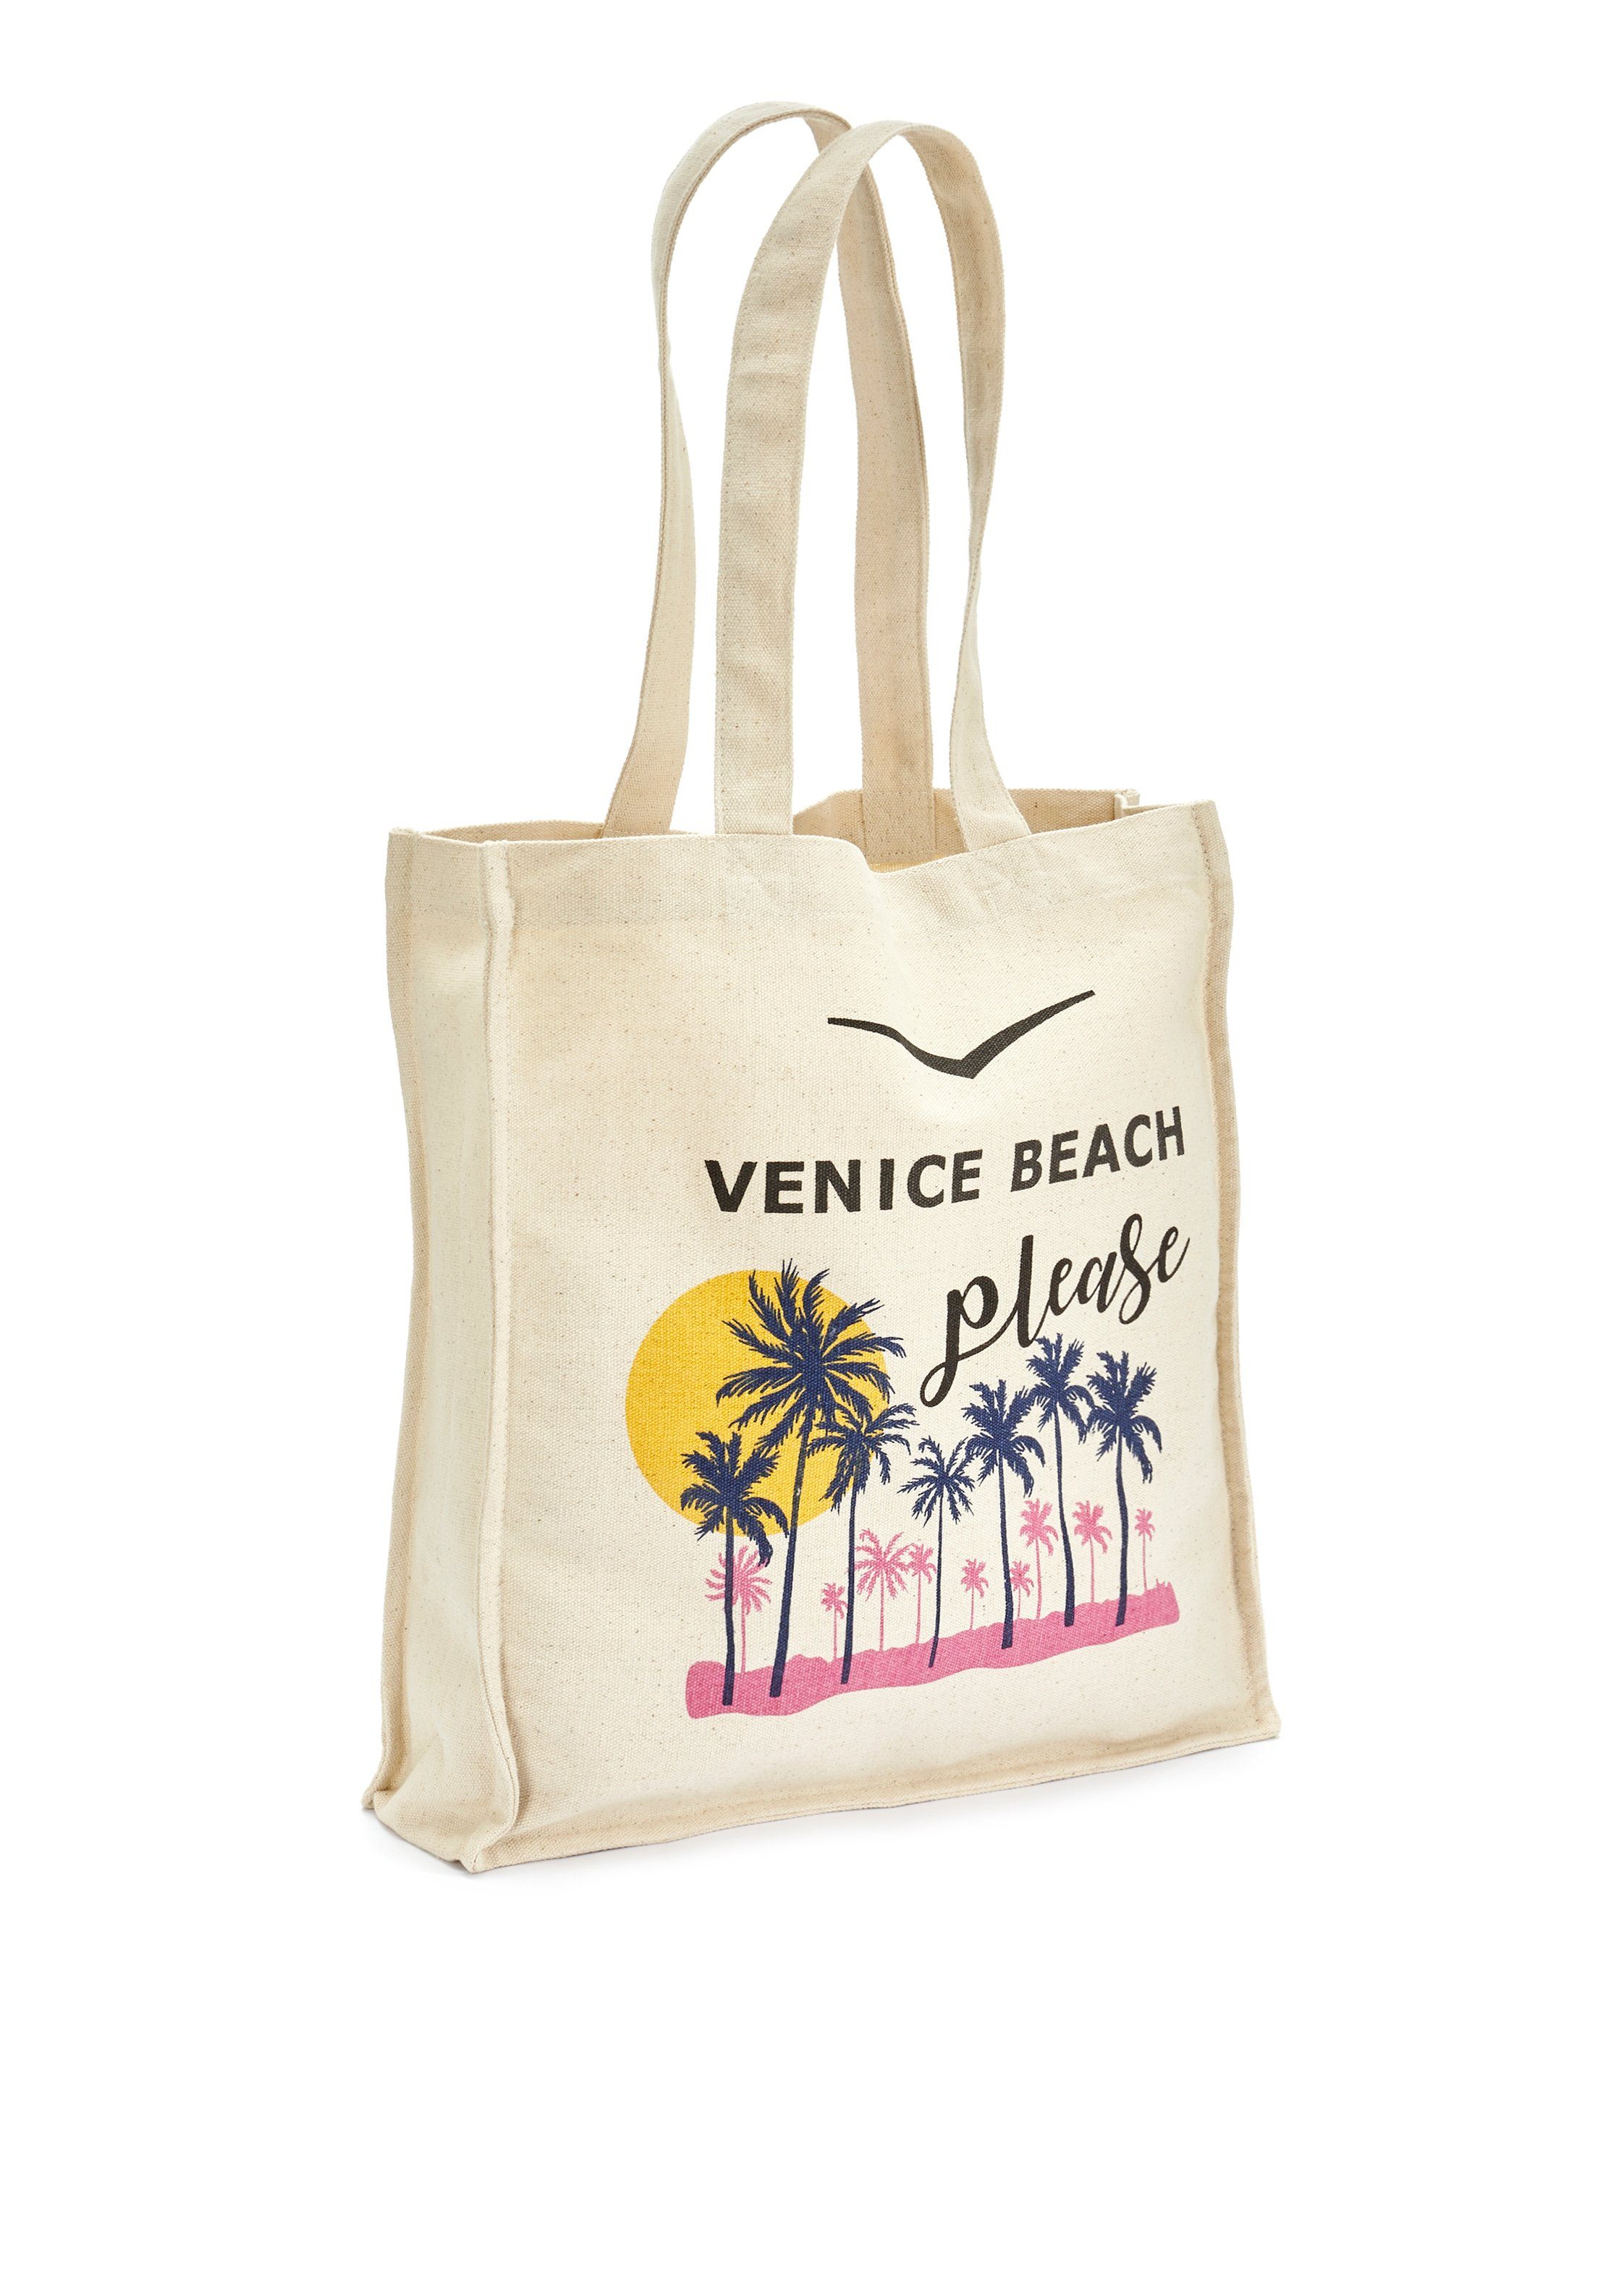 Venice Beach Сумки для покупок Strandtasche, Strandtasche, Handtasche, Schultertasche, große Tasche, Tragetasche